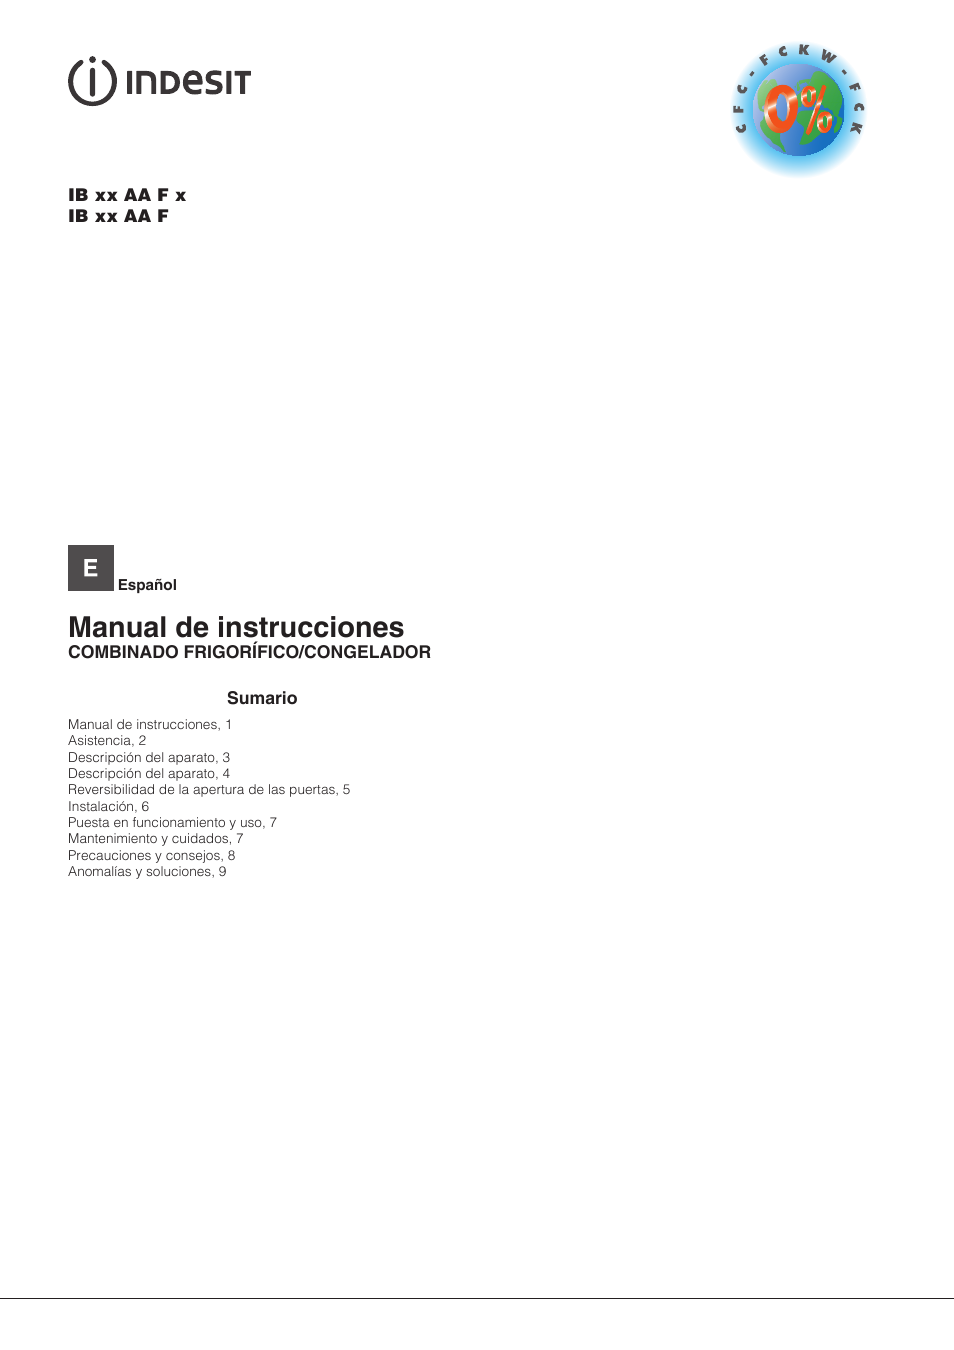 Indesit IB-34-AA-F Manual del usuario, Páginas: 12